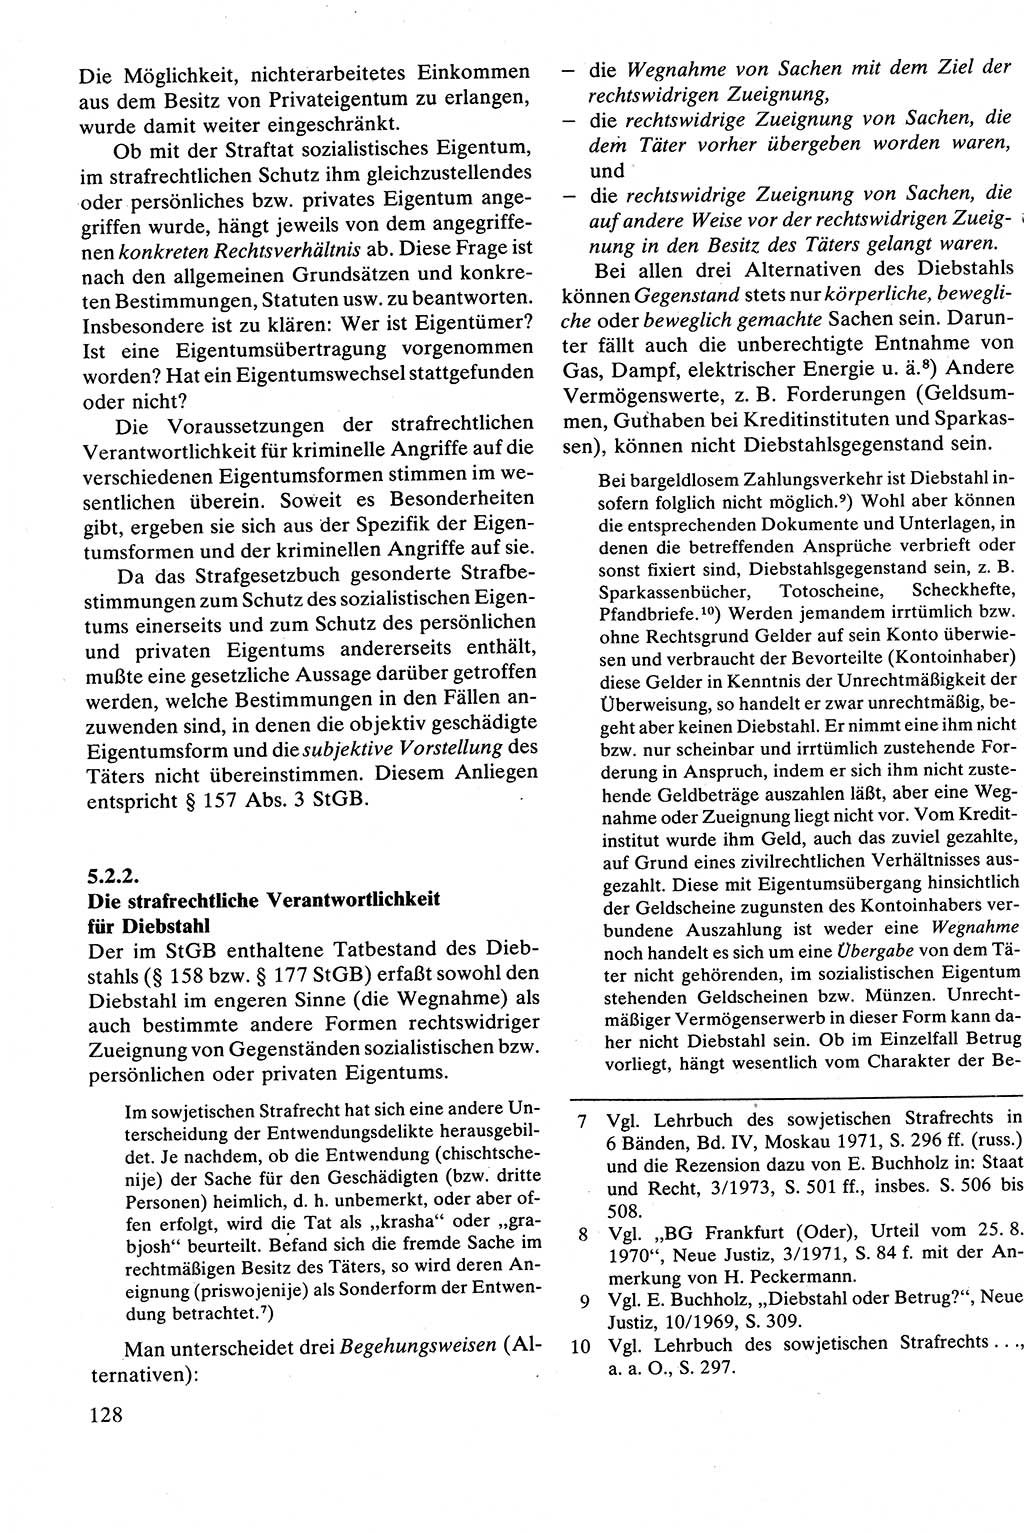 Strafrecht [Deutsche Demokratische Republik (DDR)], Besonderer Teil, Lehrbuch 1981, Seite 128 (Strafr. DDR BT Lb. 1981, S. 128)